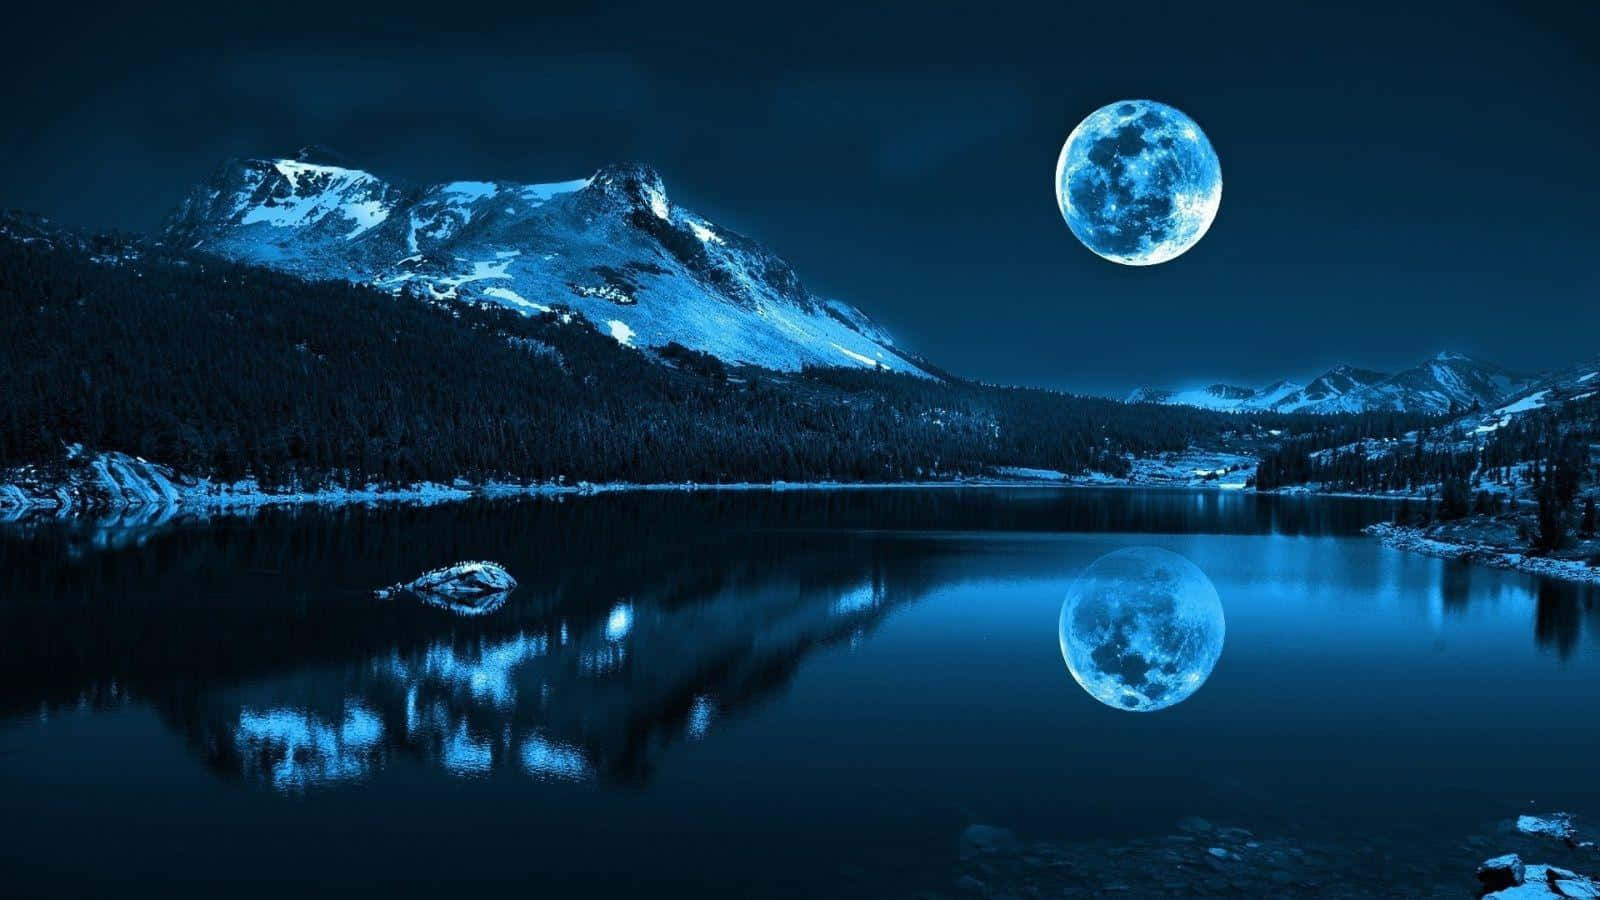 Unaluna Se Refleja En Un Lago En La Noche